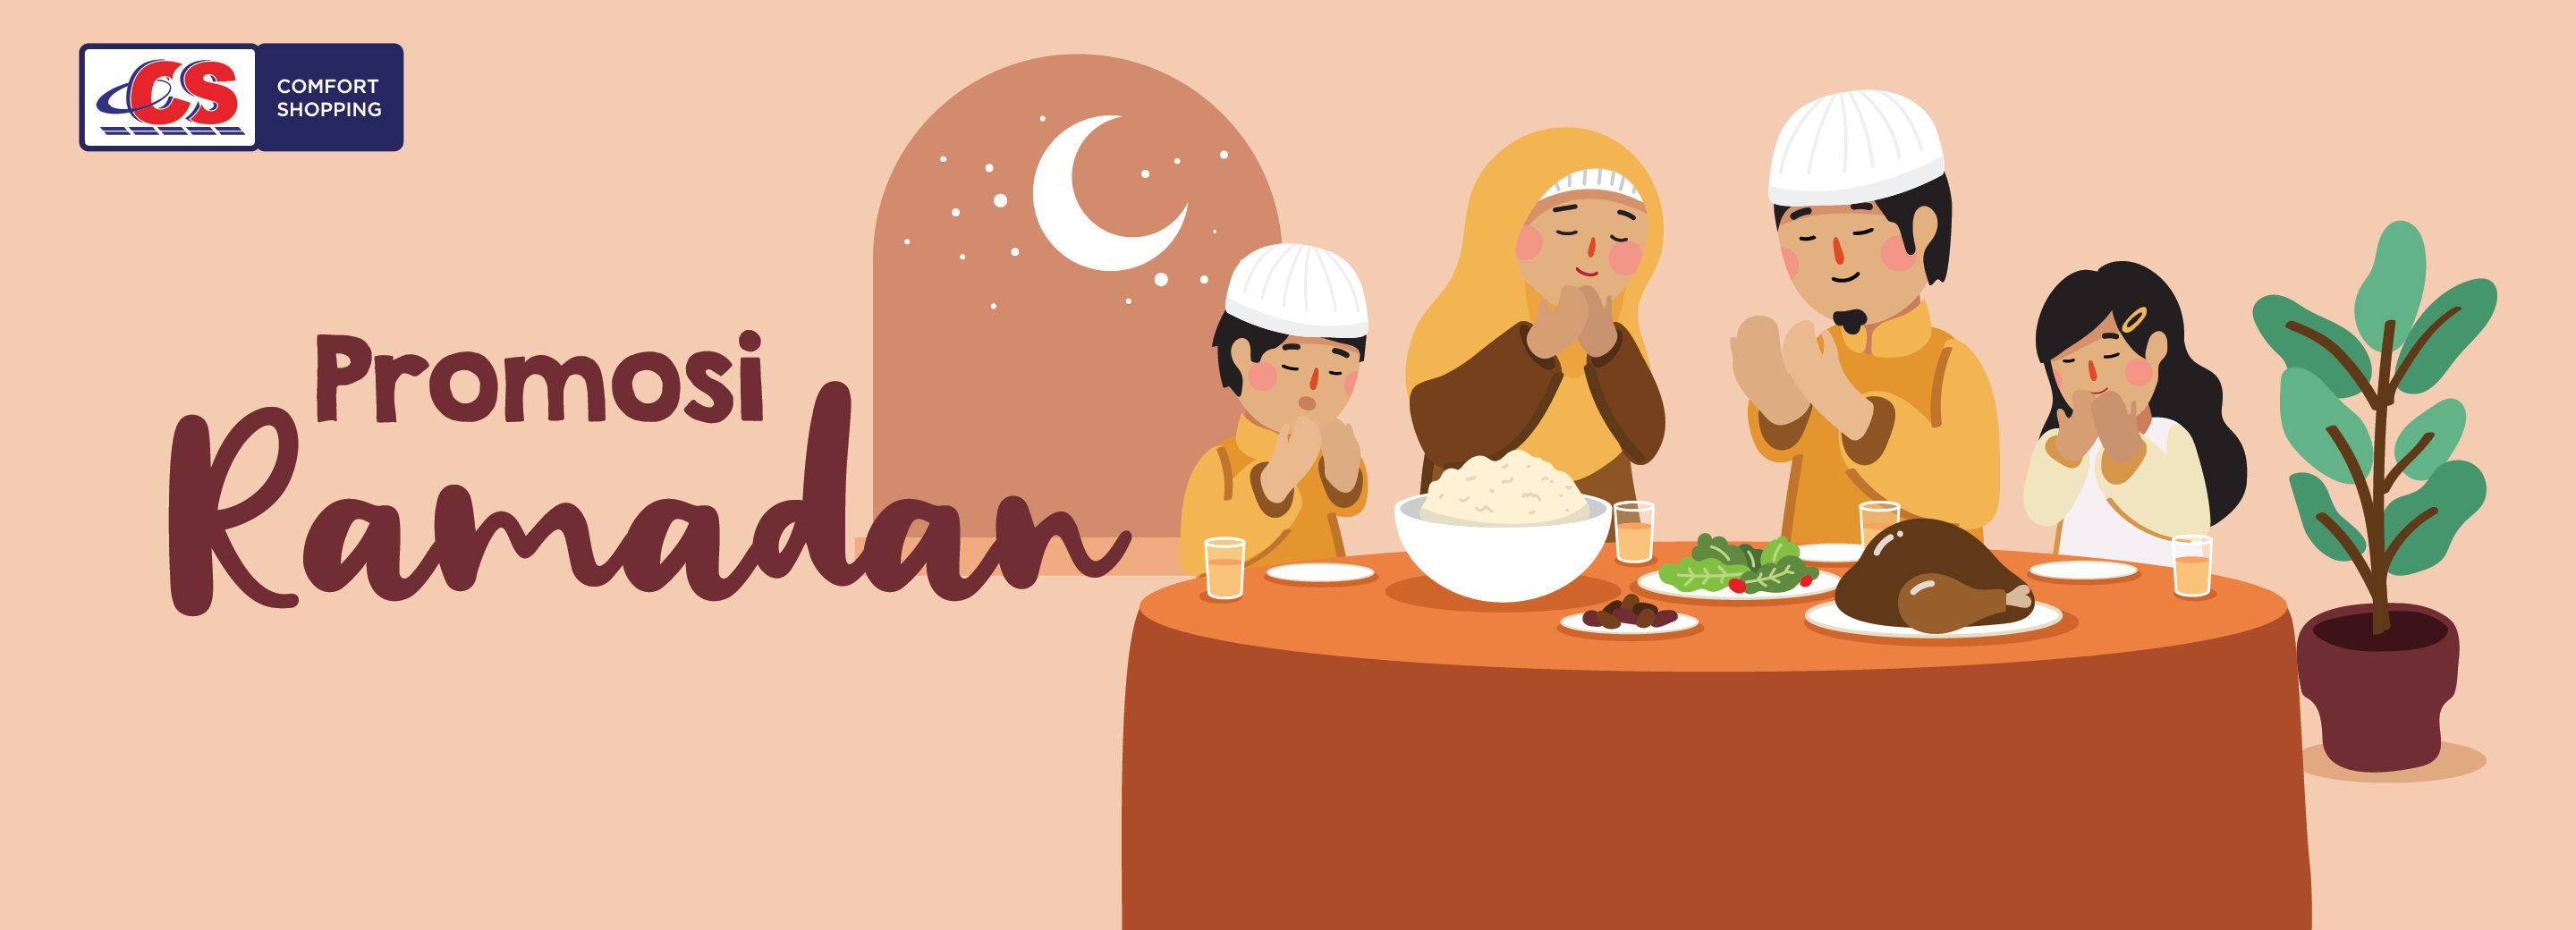 Ramadhan Promo